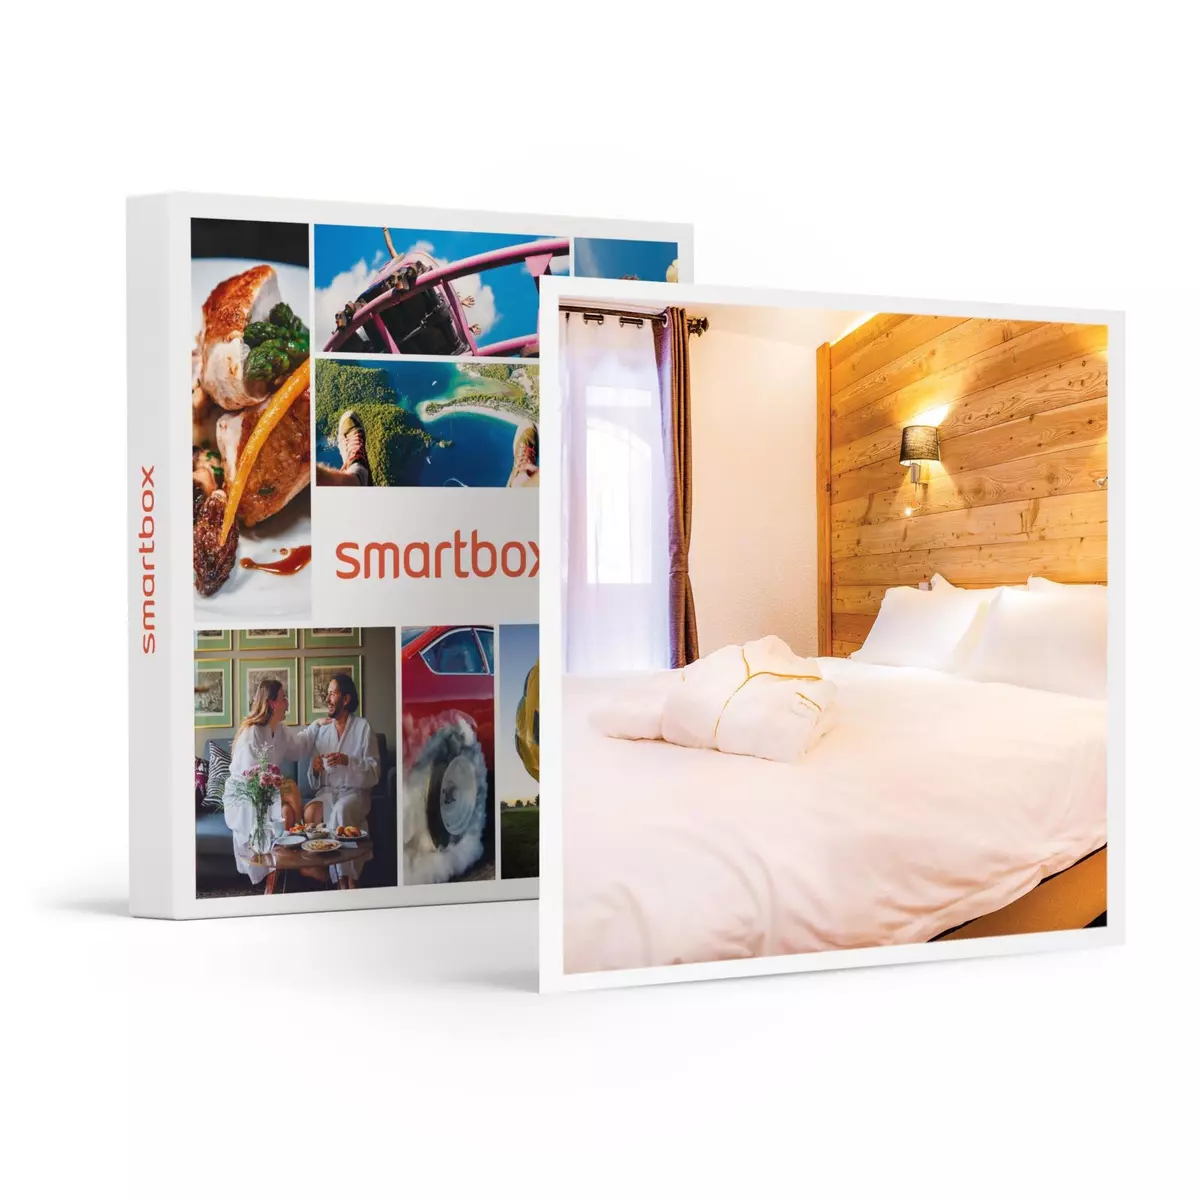 Smartbox 3 jours à Risoul en hôtel 4* avec accès illimité au sauna - Coffret Cadeau Séjour